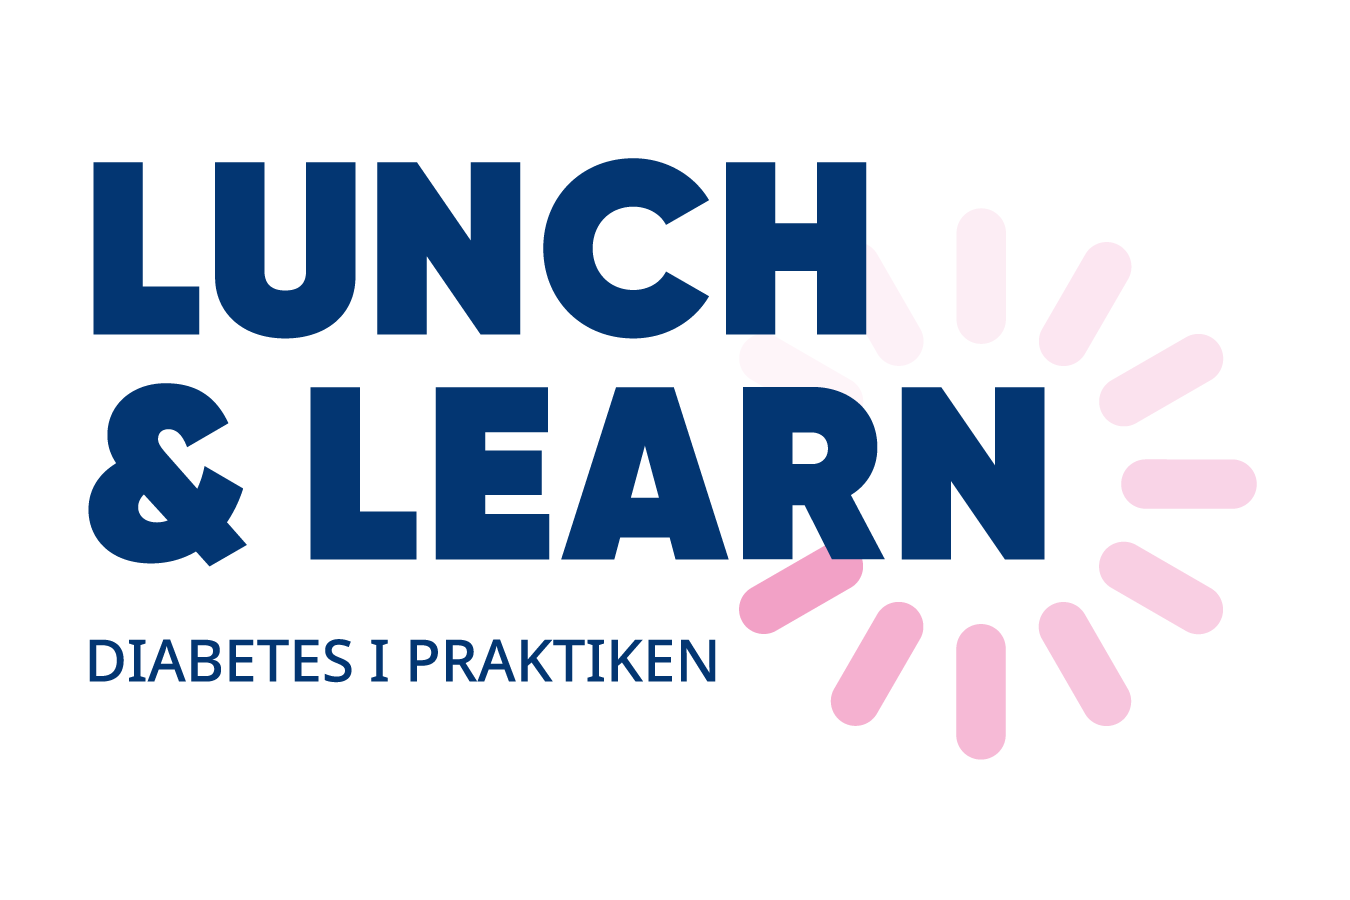 Lunch & Learn - Praktisk patientfallsdiskussion kring typ 2 diabetes